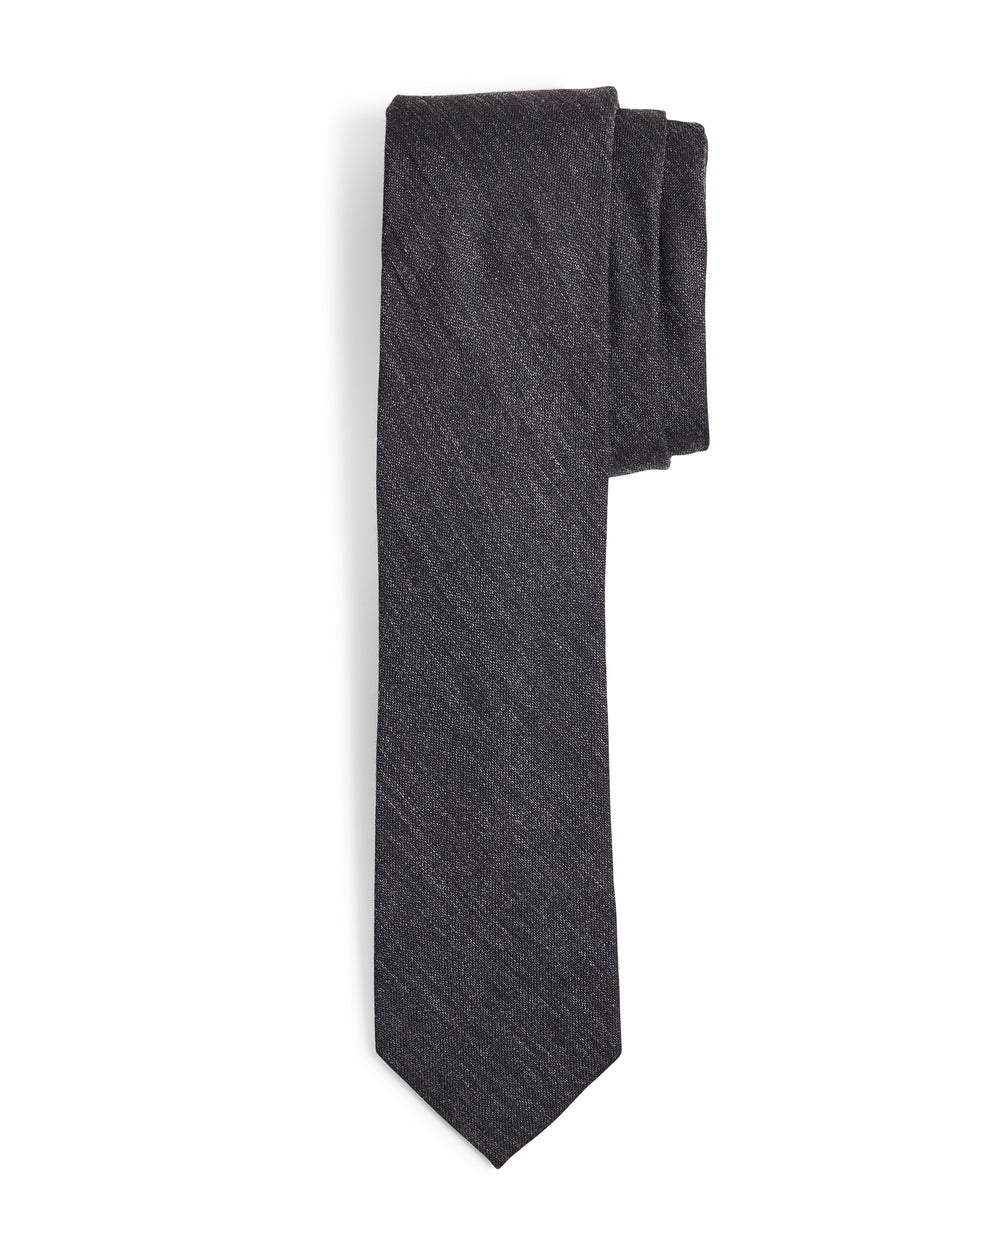 Lynwood Solid Slim Tie - Black